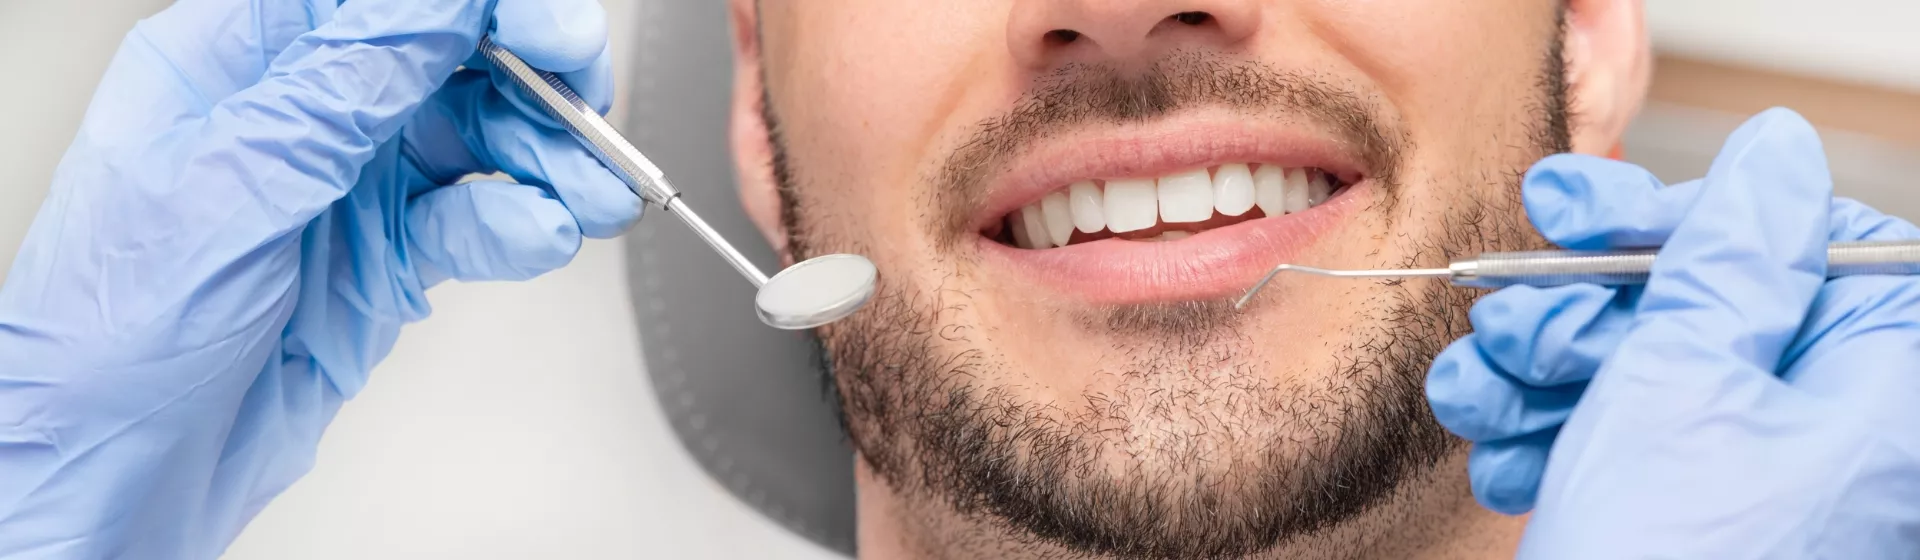 Przegląd zębów u mężczyzny